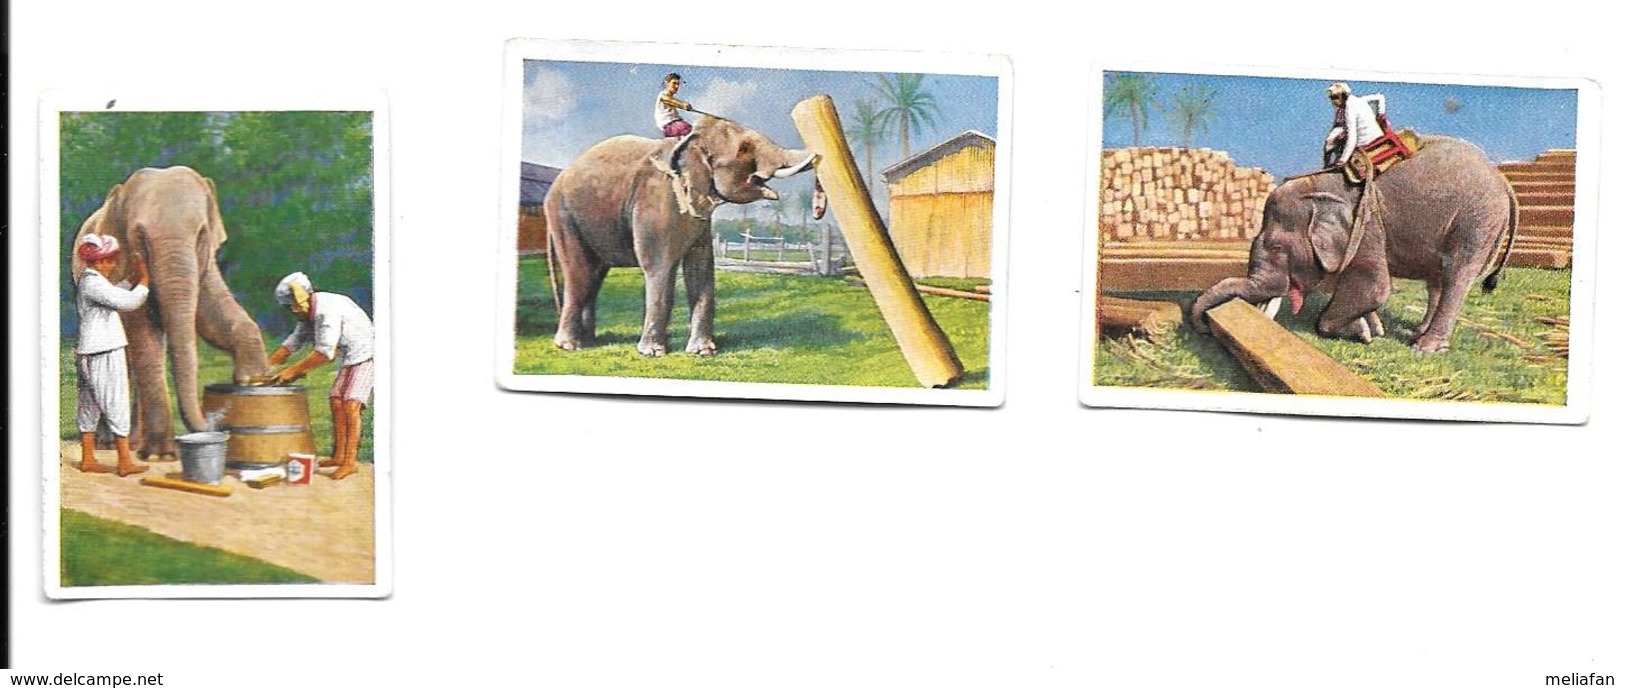 BP76 - IMAGES CIGARETTES SALEM - TRAVAIL DES ELEPHANTS - Other Brands